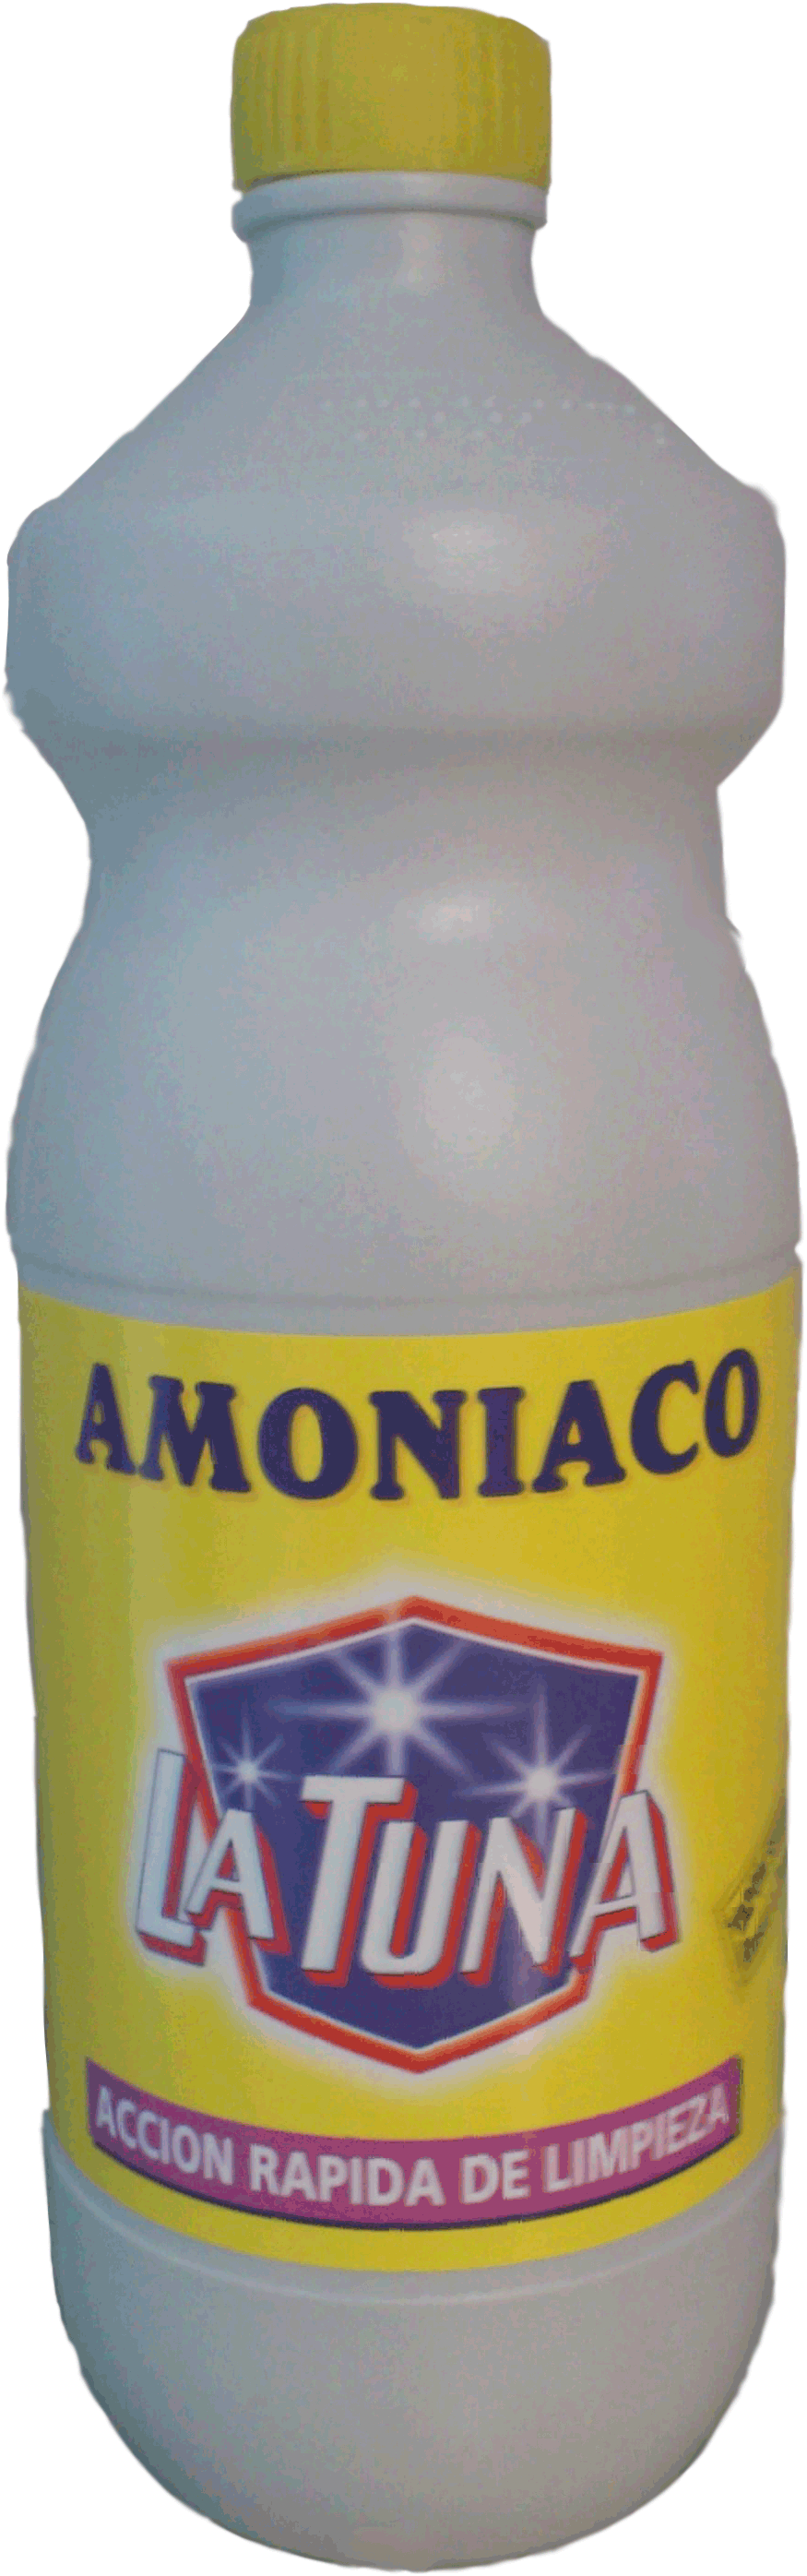 Amoniaco Perfumado 15 Botellas litros - Envíos toda España